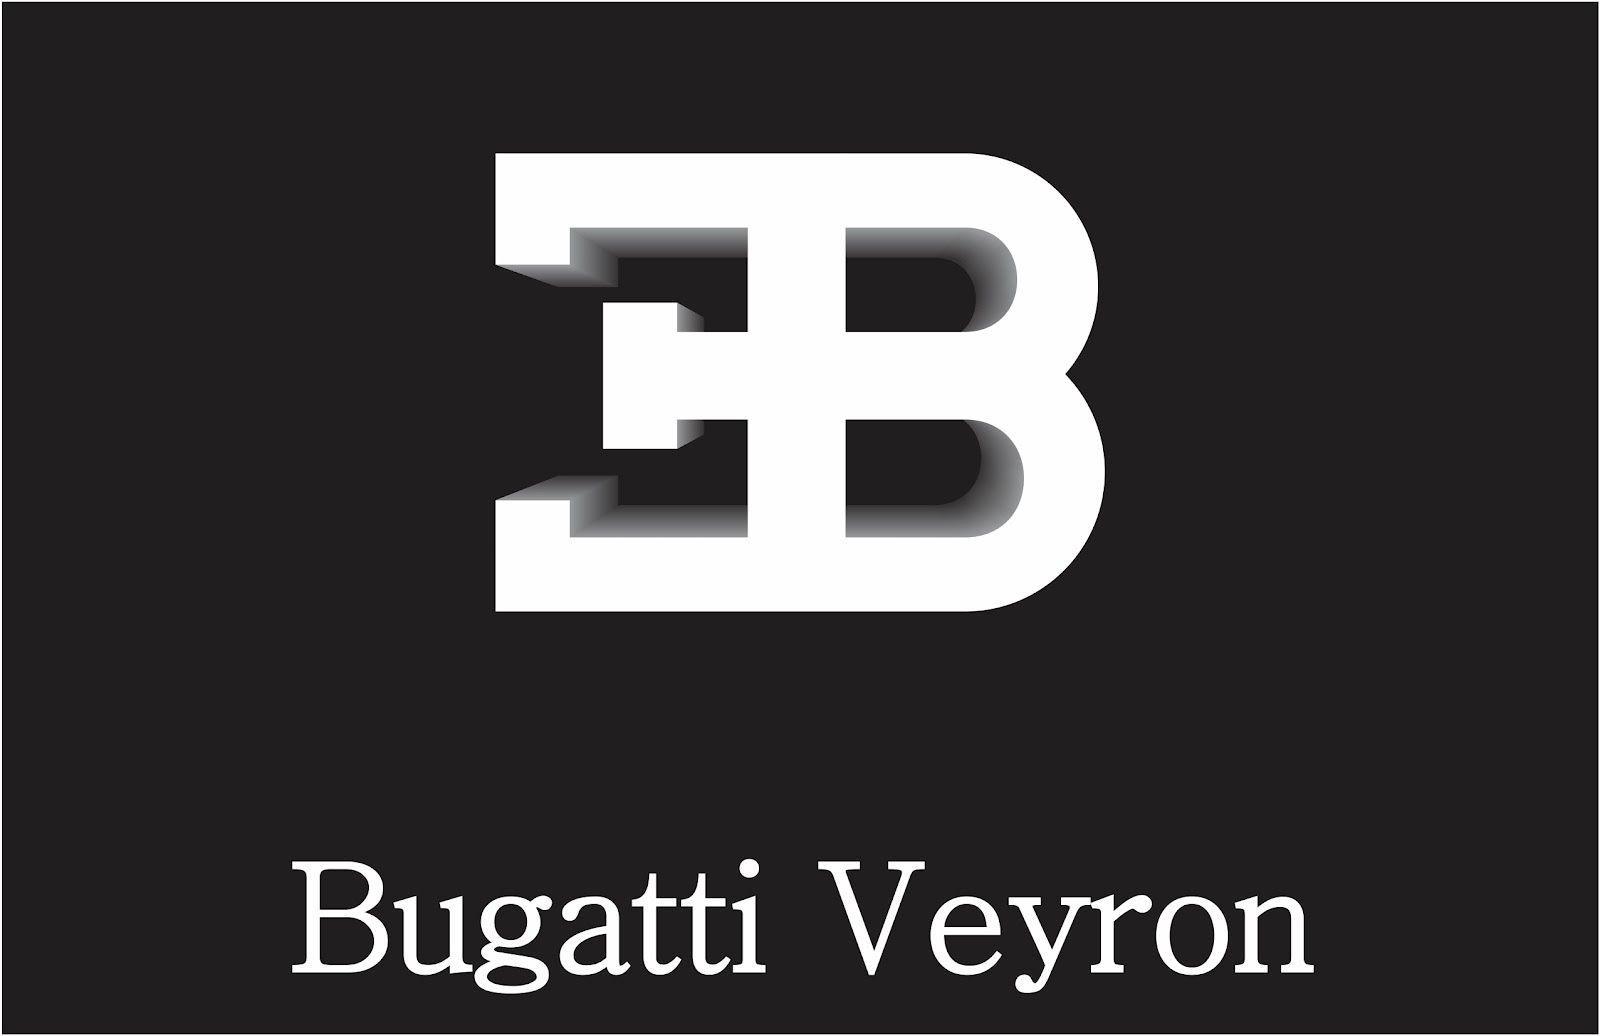 Bugatti Veyron Logo Wallpaper 1366x768 (3942)